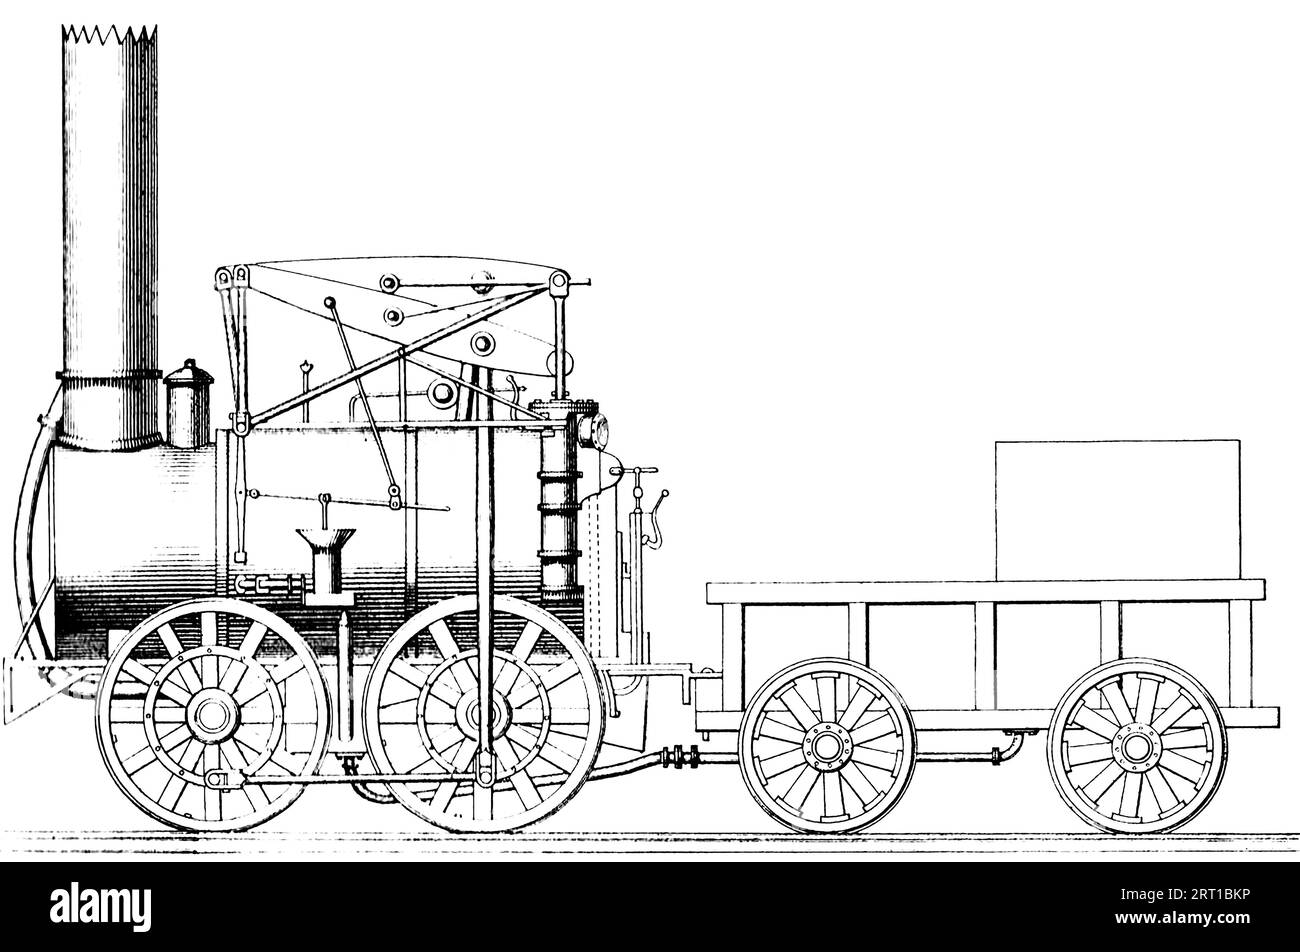 La Stourbridge Lion était une locomotive ferroviaire à vapeur. C'était la première locomotive construite à l'étranger à être exploitée aux États-Unis, et l'une des premières locomotives à fonctionner en dehors de la Grande-Bretagne. Il tire son nom du visage du lion peint sur le devant, et de Stourbridge en Angleterre, où il a été fabriqué par la firme Foster, Rastrick and Company en 1829 Banque D'Images